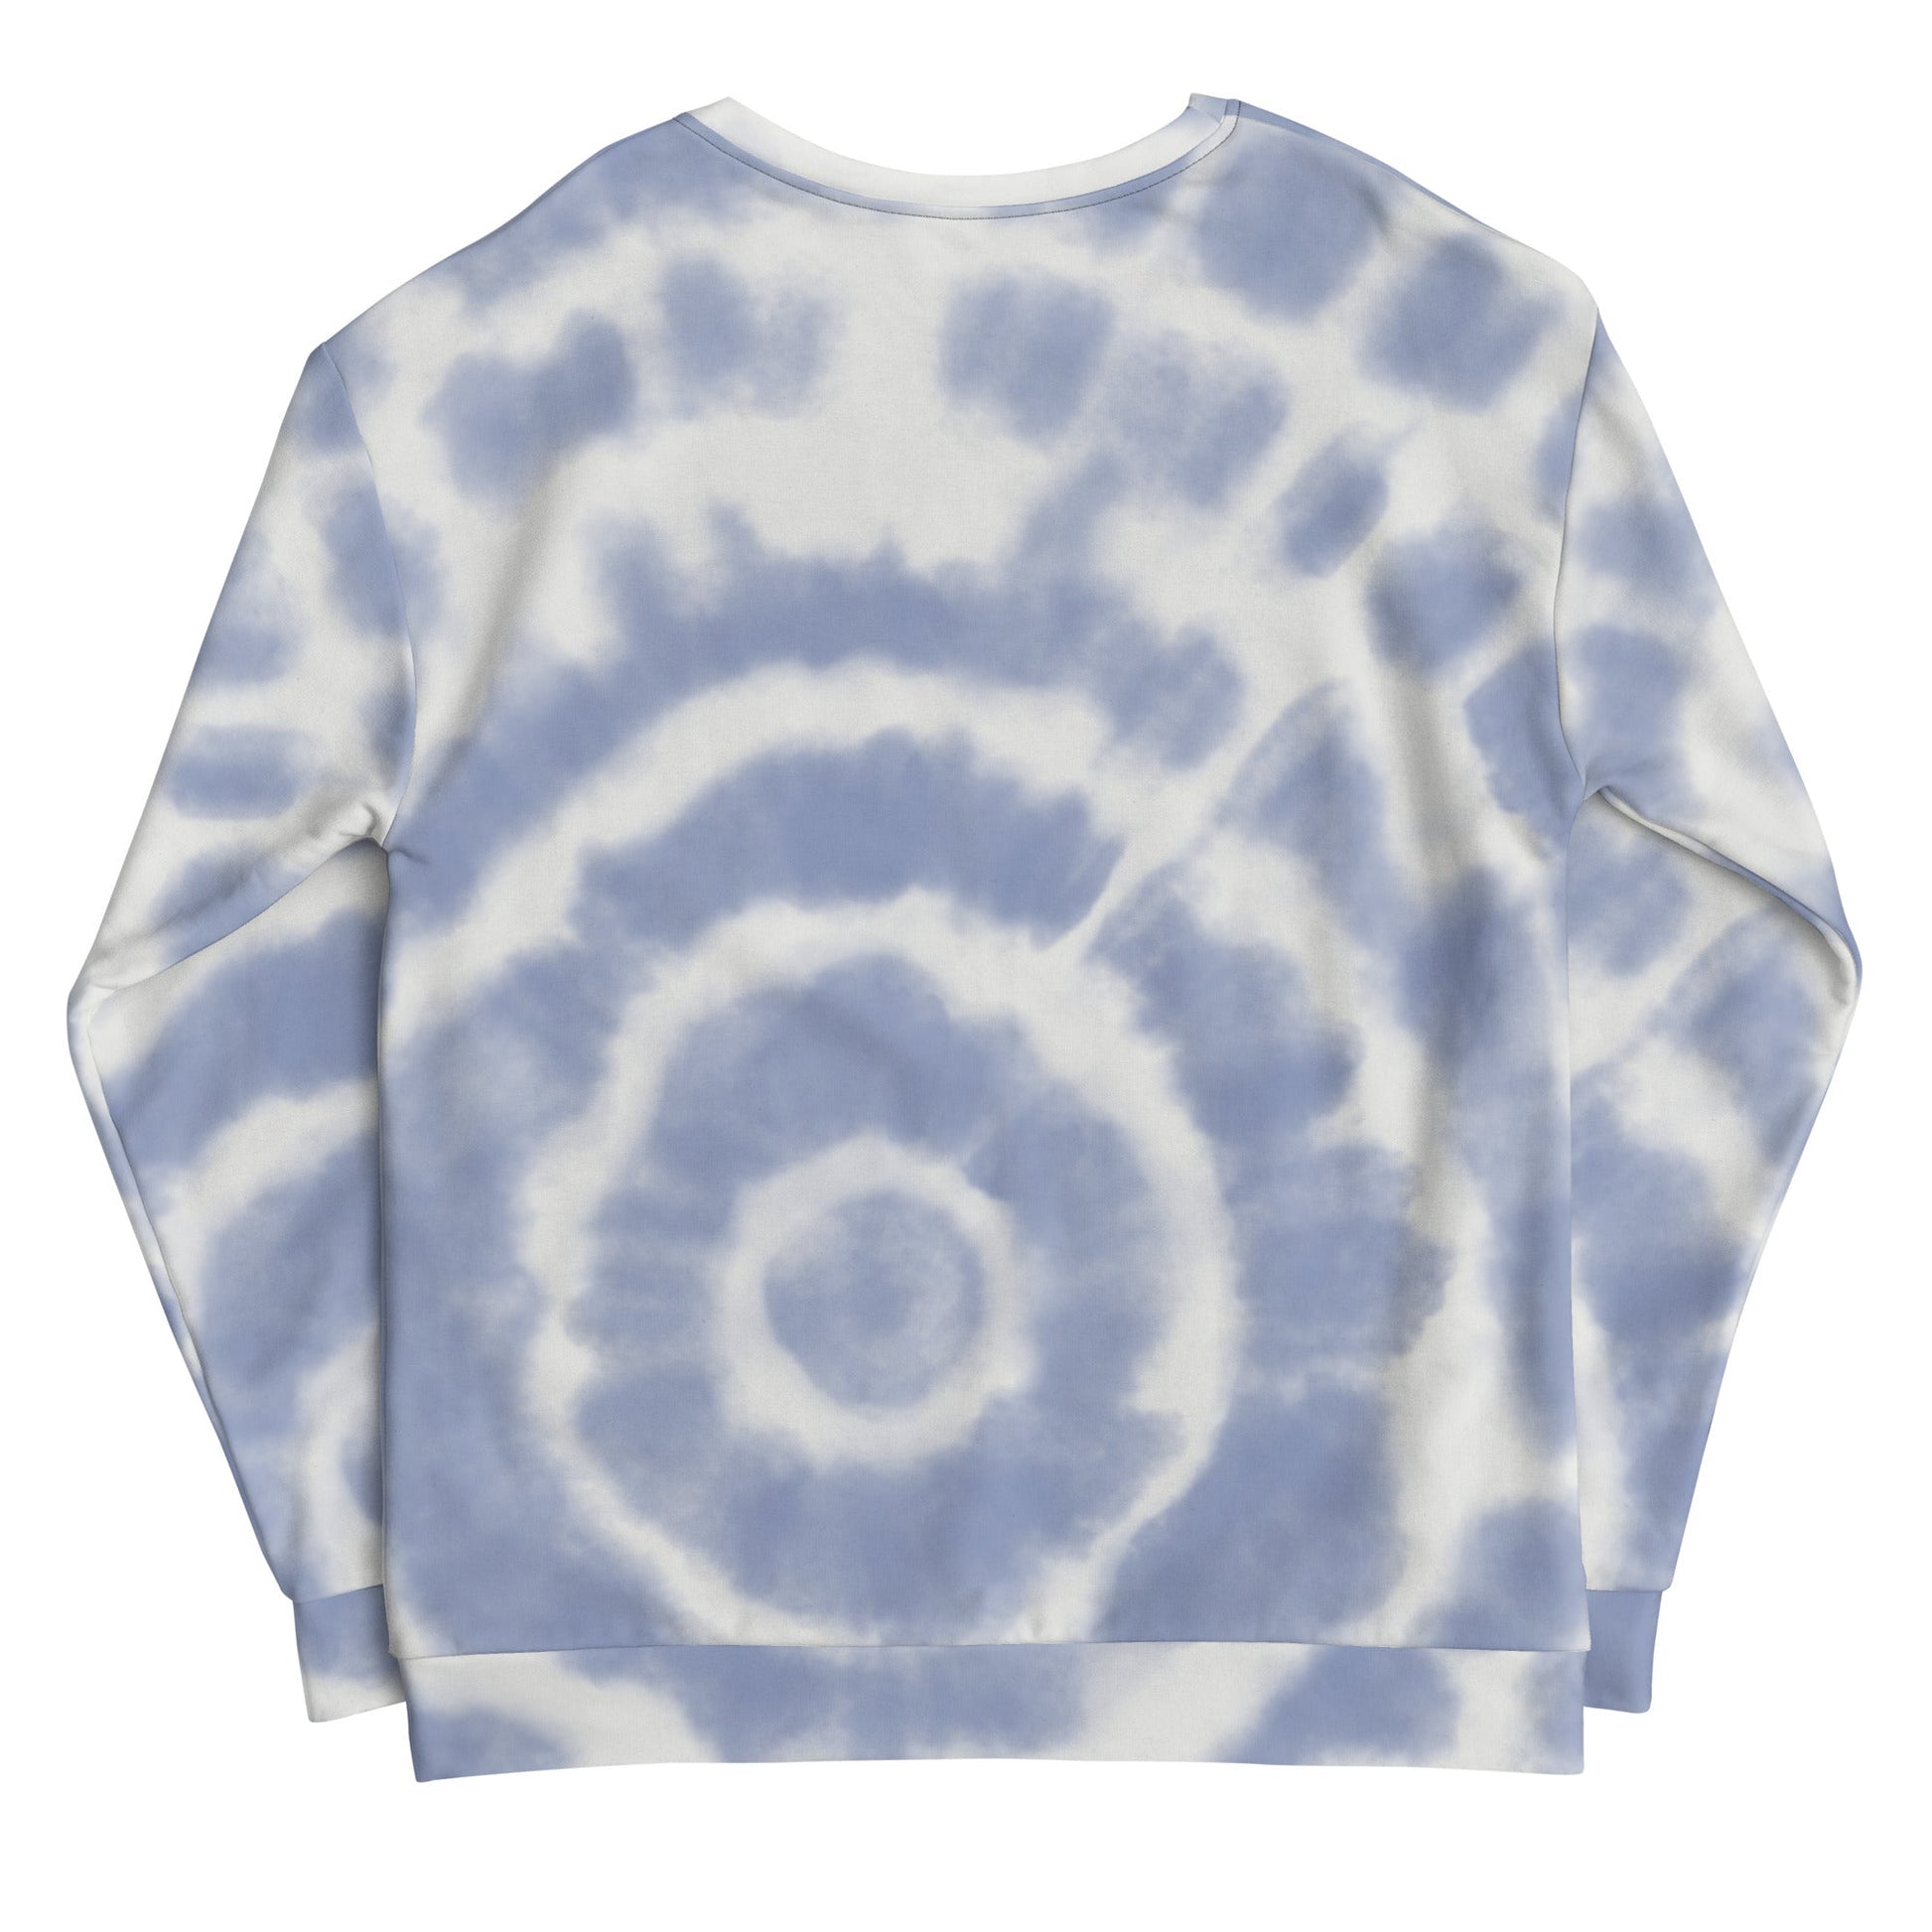 Blue Tie-Dye Vibe Tropical Sweatshirt - Tropical Seas Clothing 